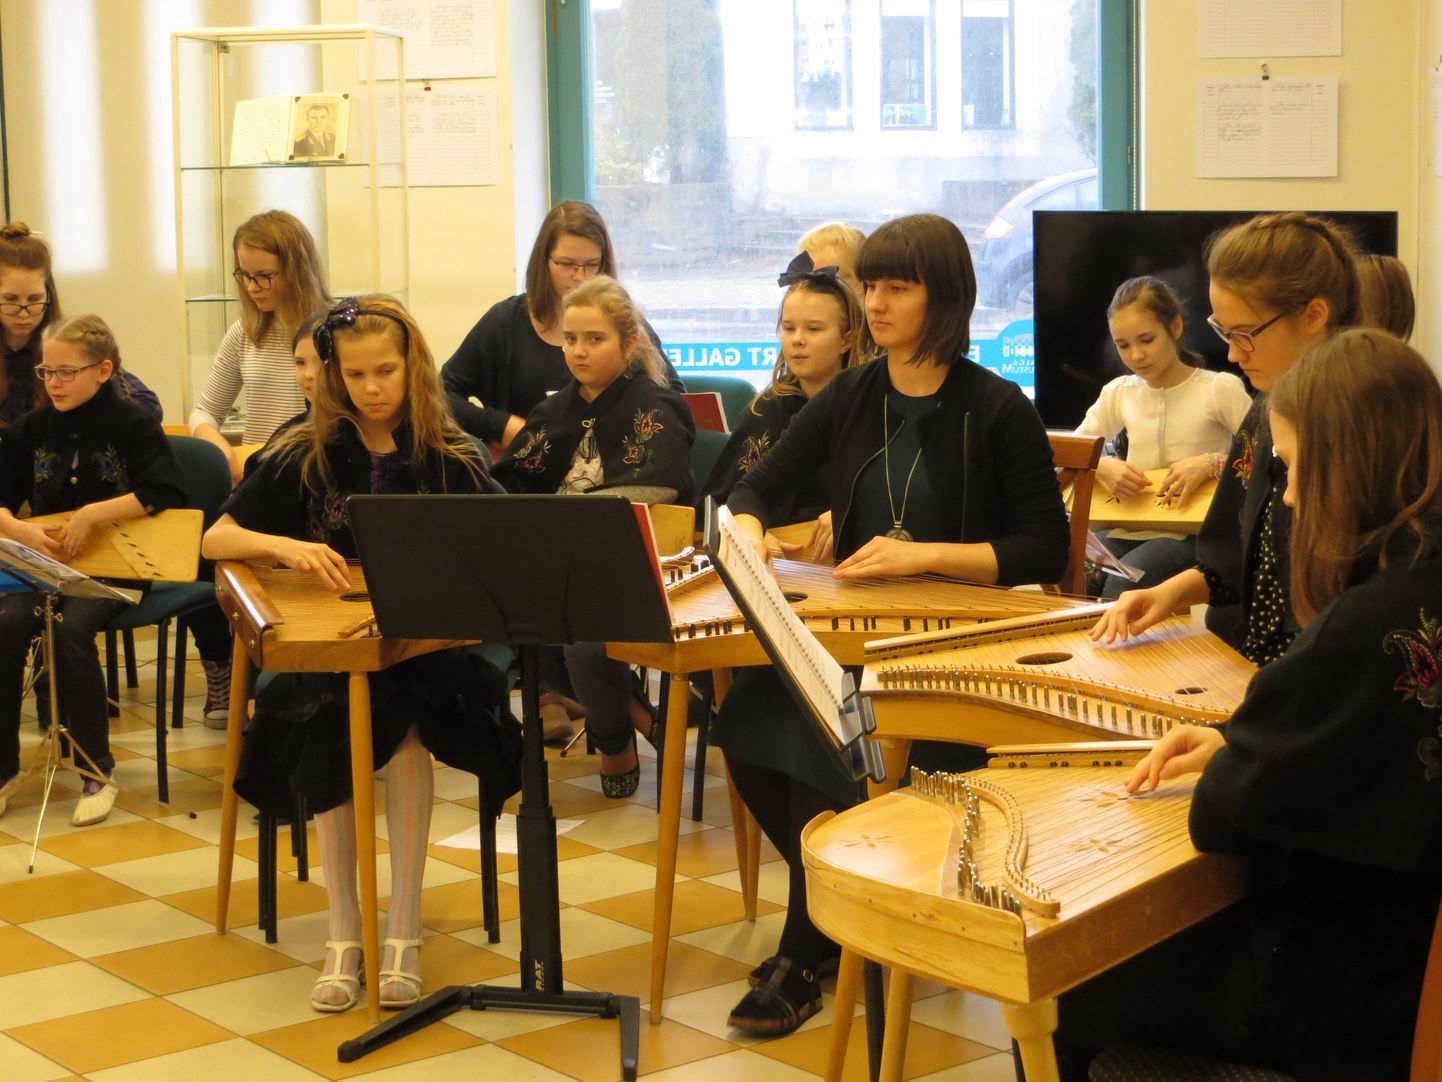 Valga ja Võru muusikakoolide kandleõpilased ja -õpetajad andsid Valga muuseumis kevade alguse puhul kontserdi, kus ettekandele tulid lood rahvamuusikapeao repertuaarist.